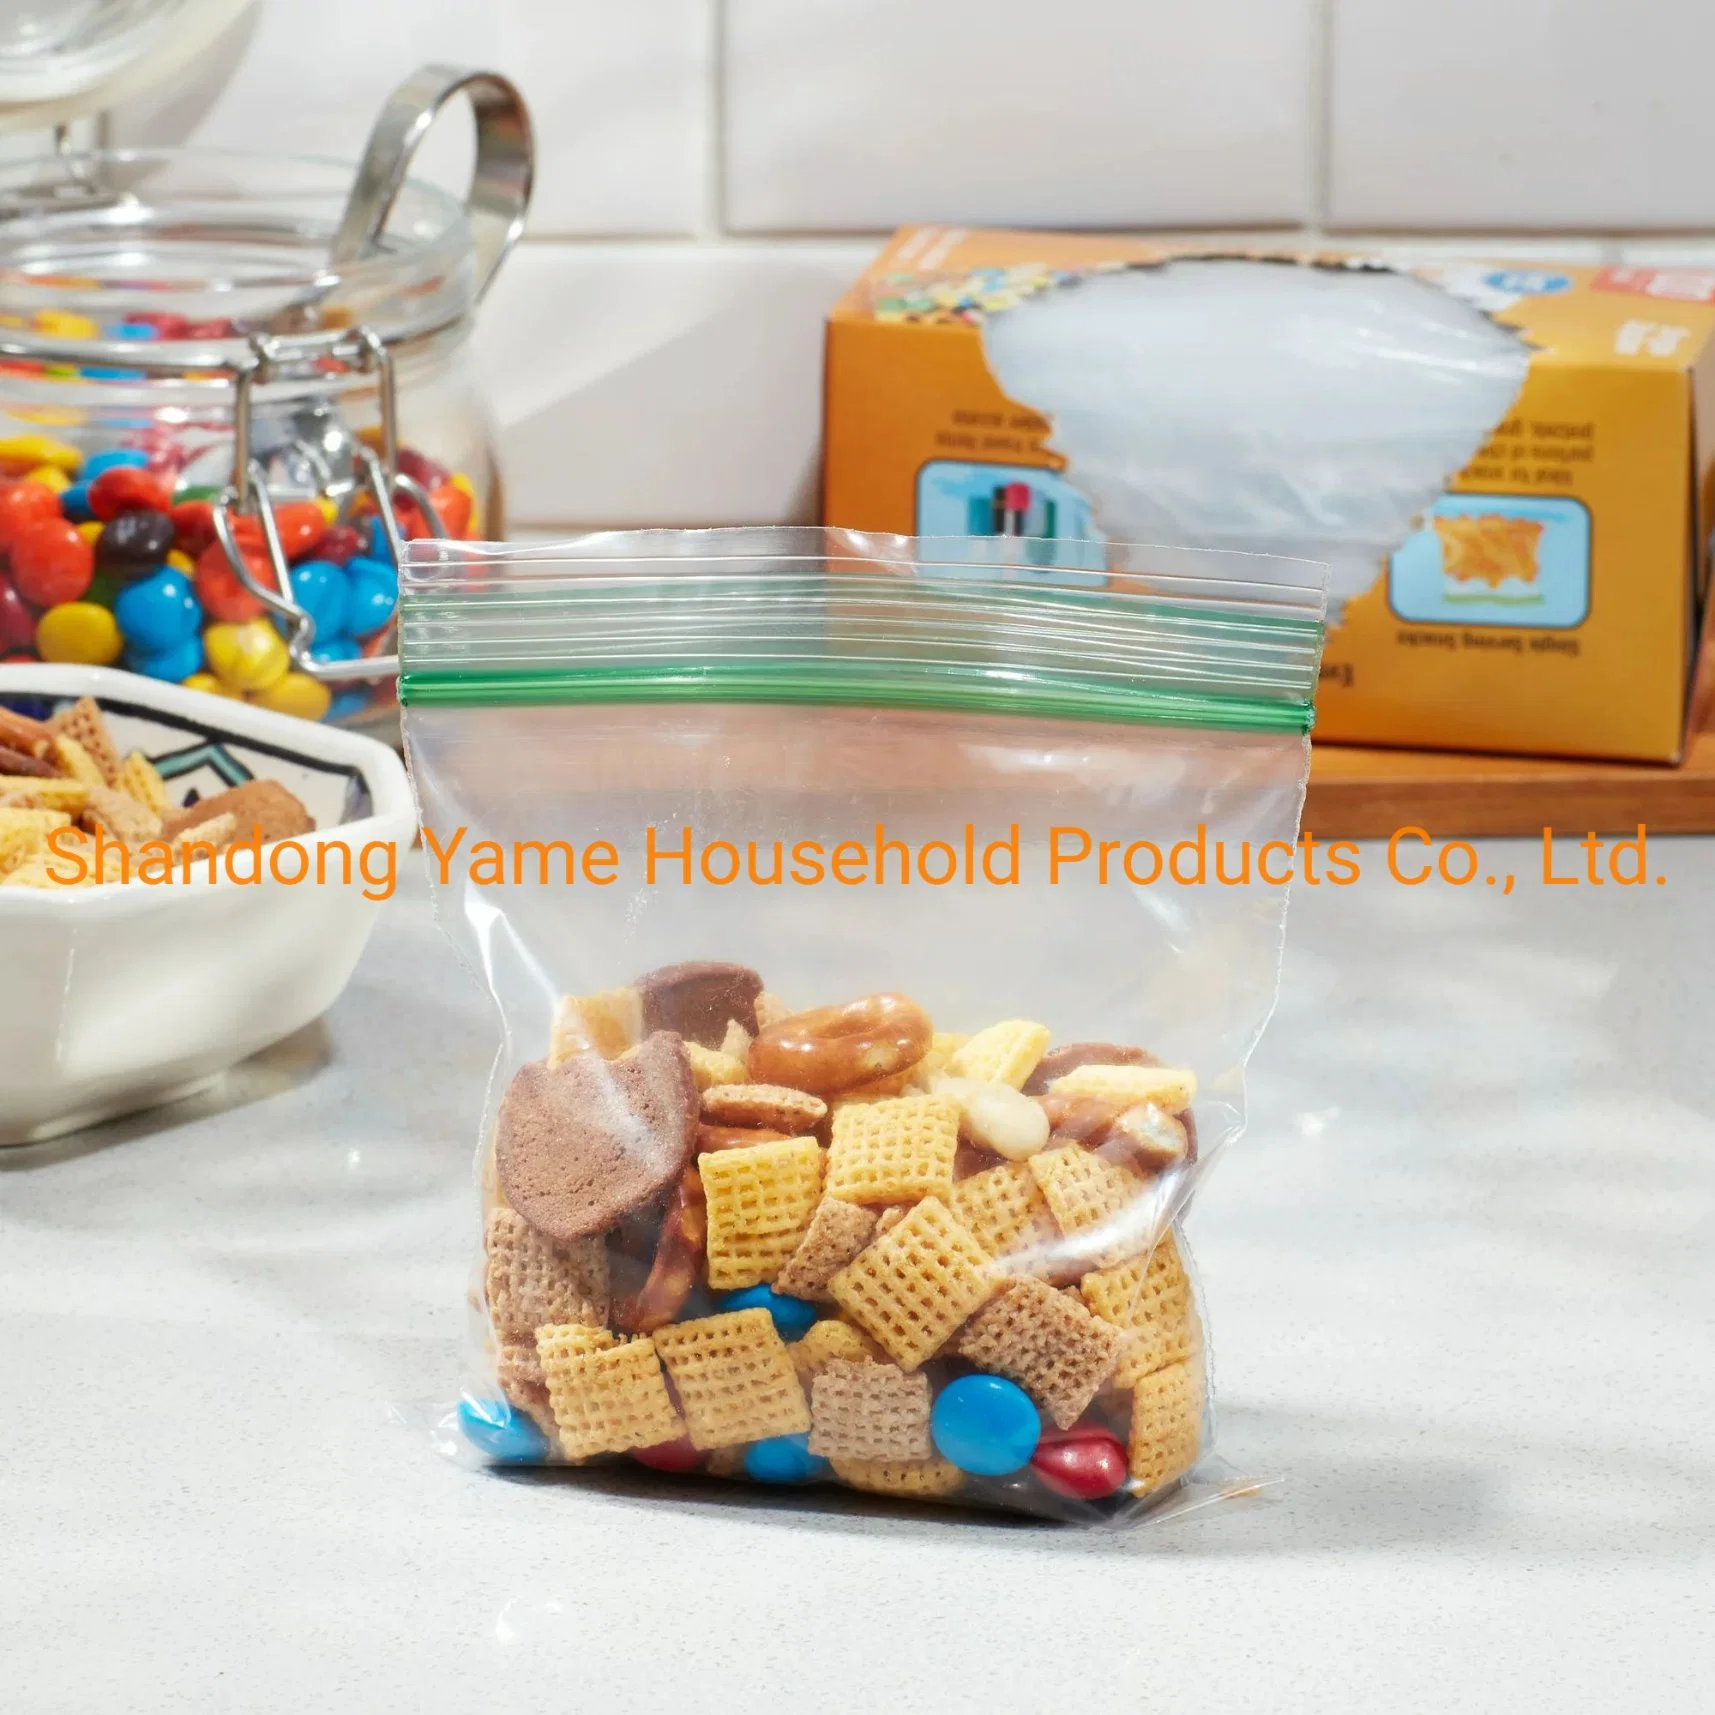 La FDA Bolsa Ziplock de plástico envases de alimentos de la bolsa de almacenamiento de alimentos de la bolsa de congelador Snack Bolsa Bolsa de Sandwich